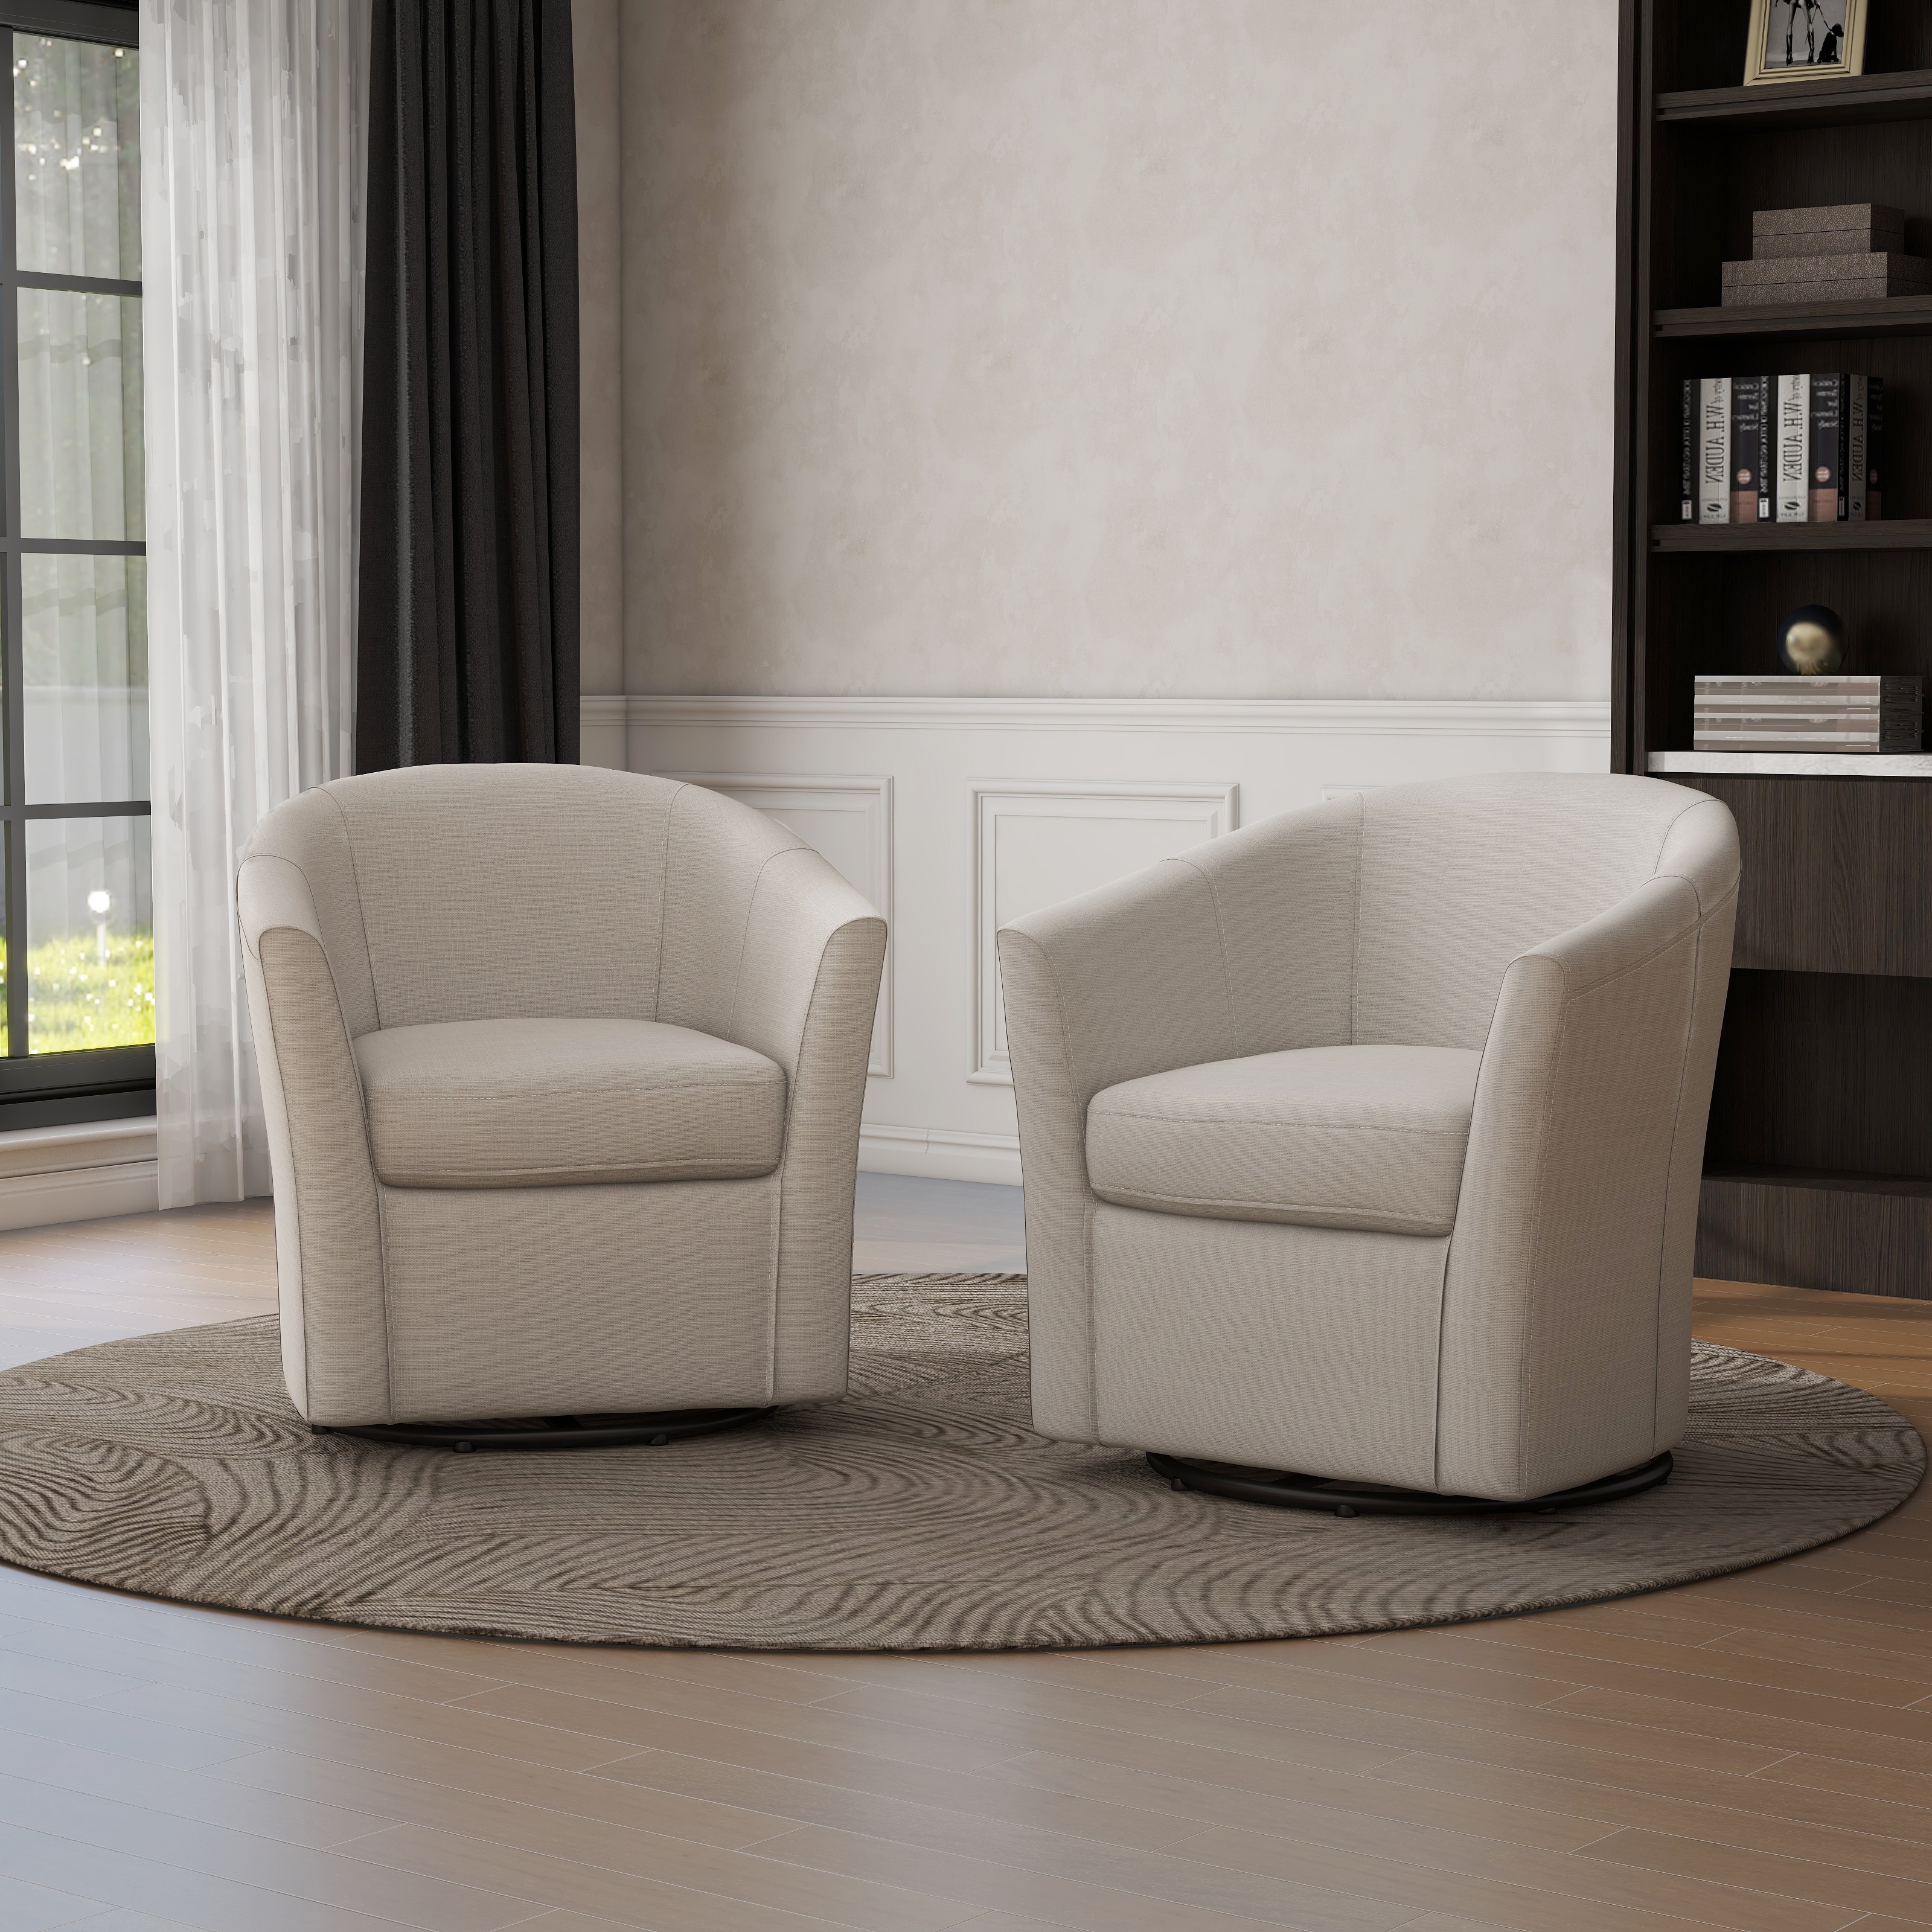 Swivel Barrel Chair for Living Room